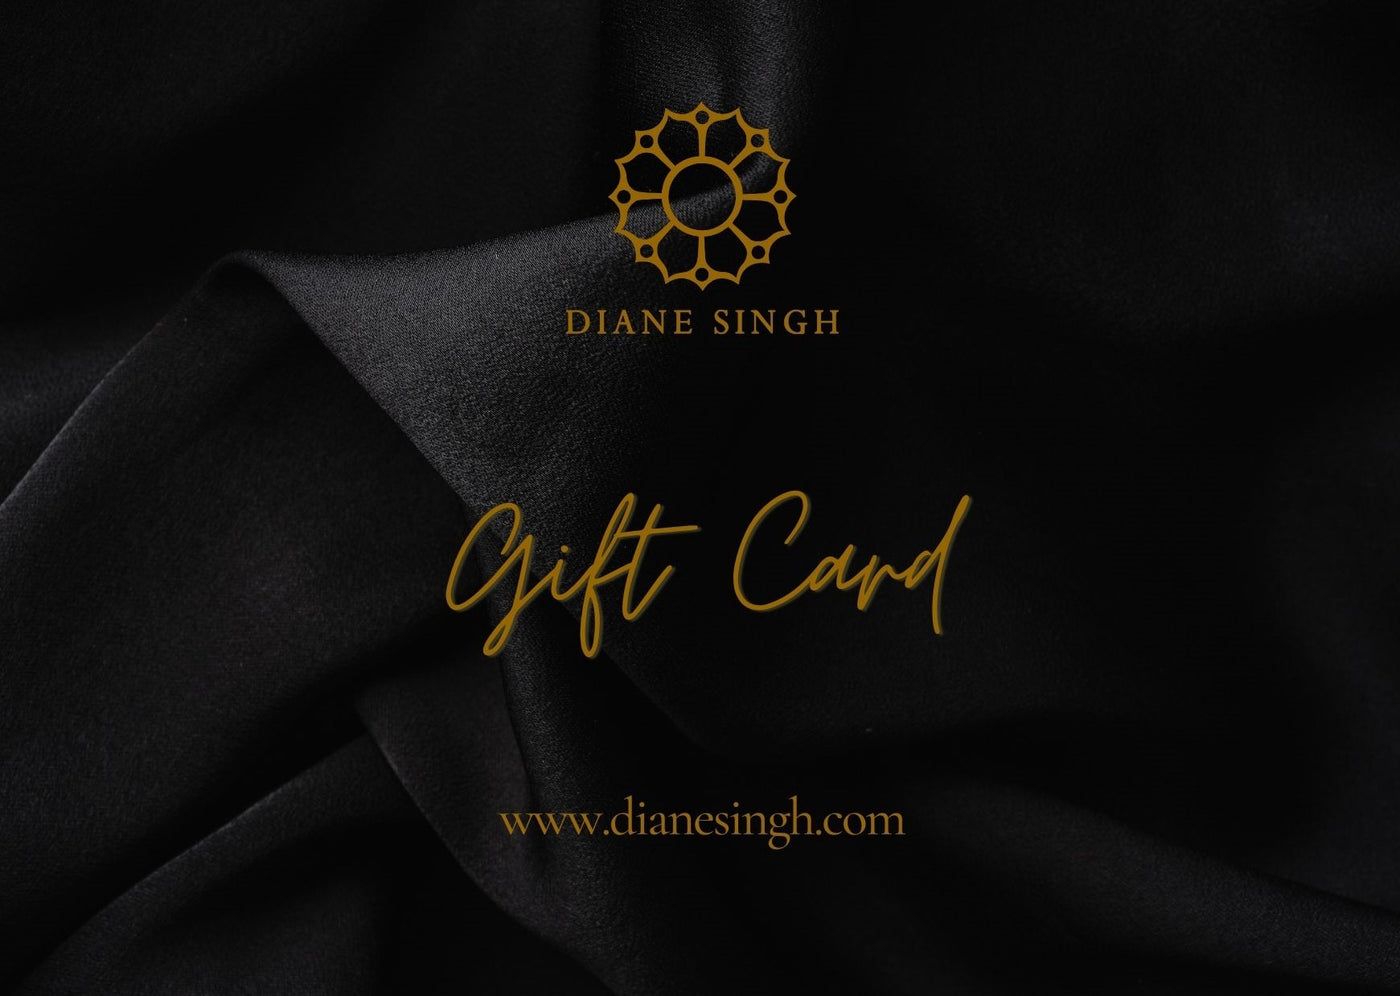 Diane Singh Gift Card